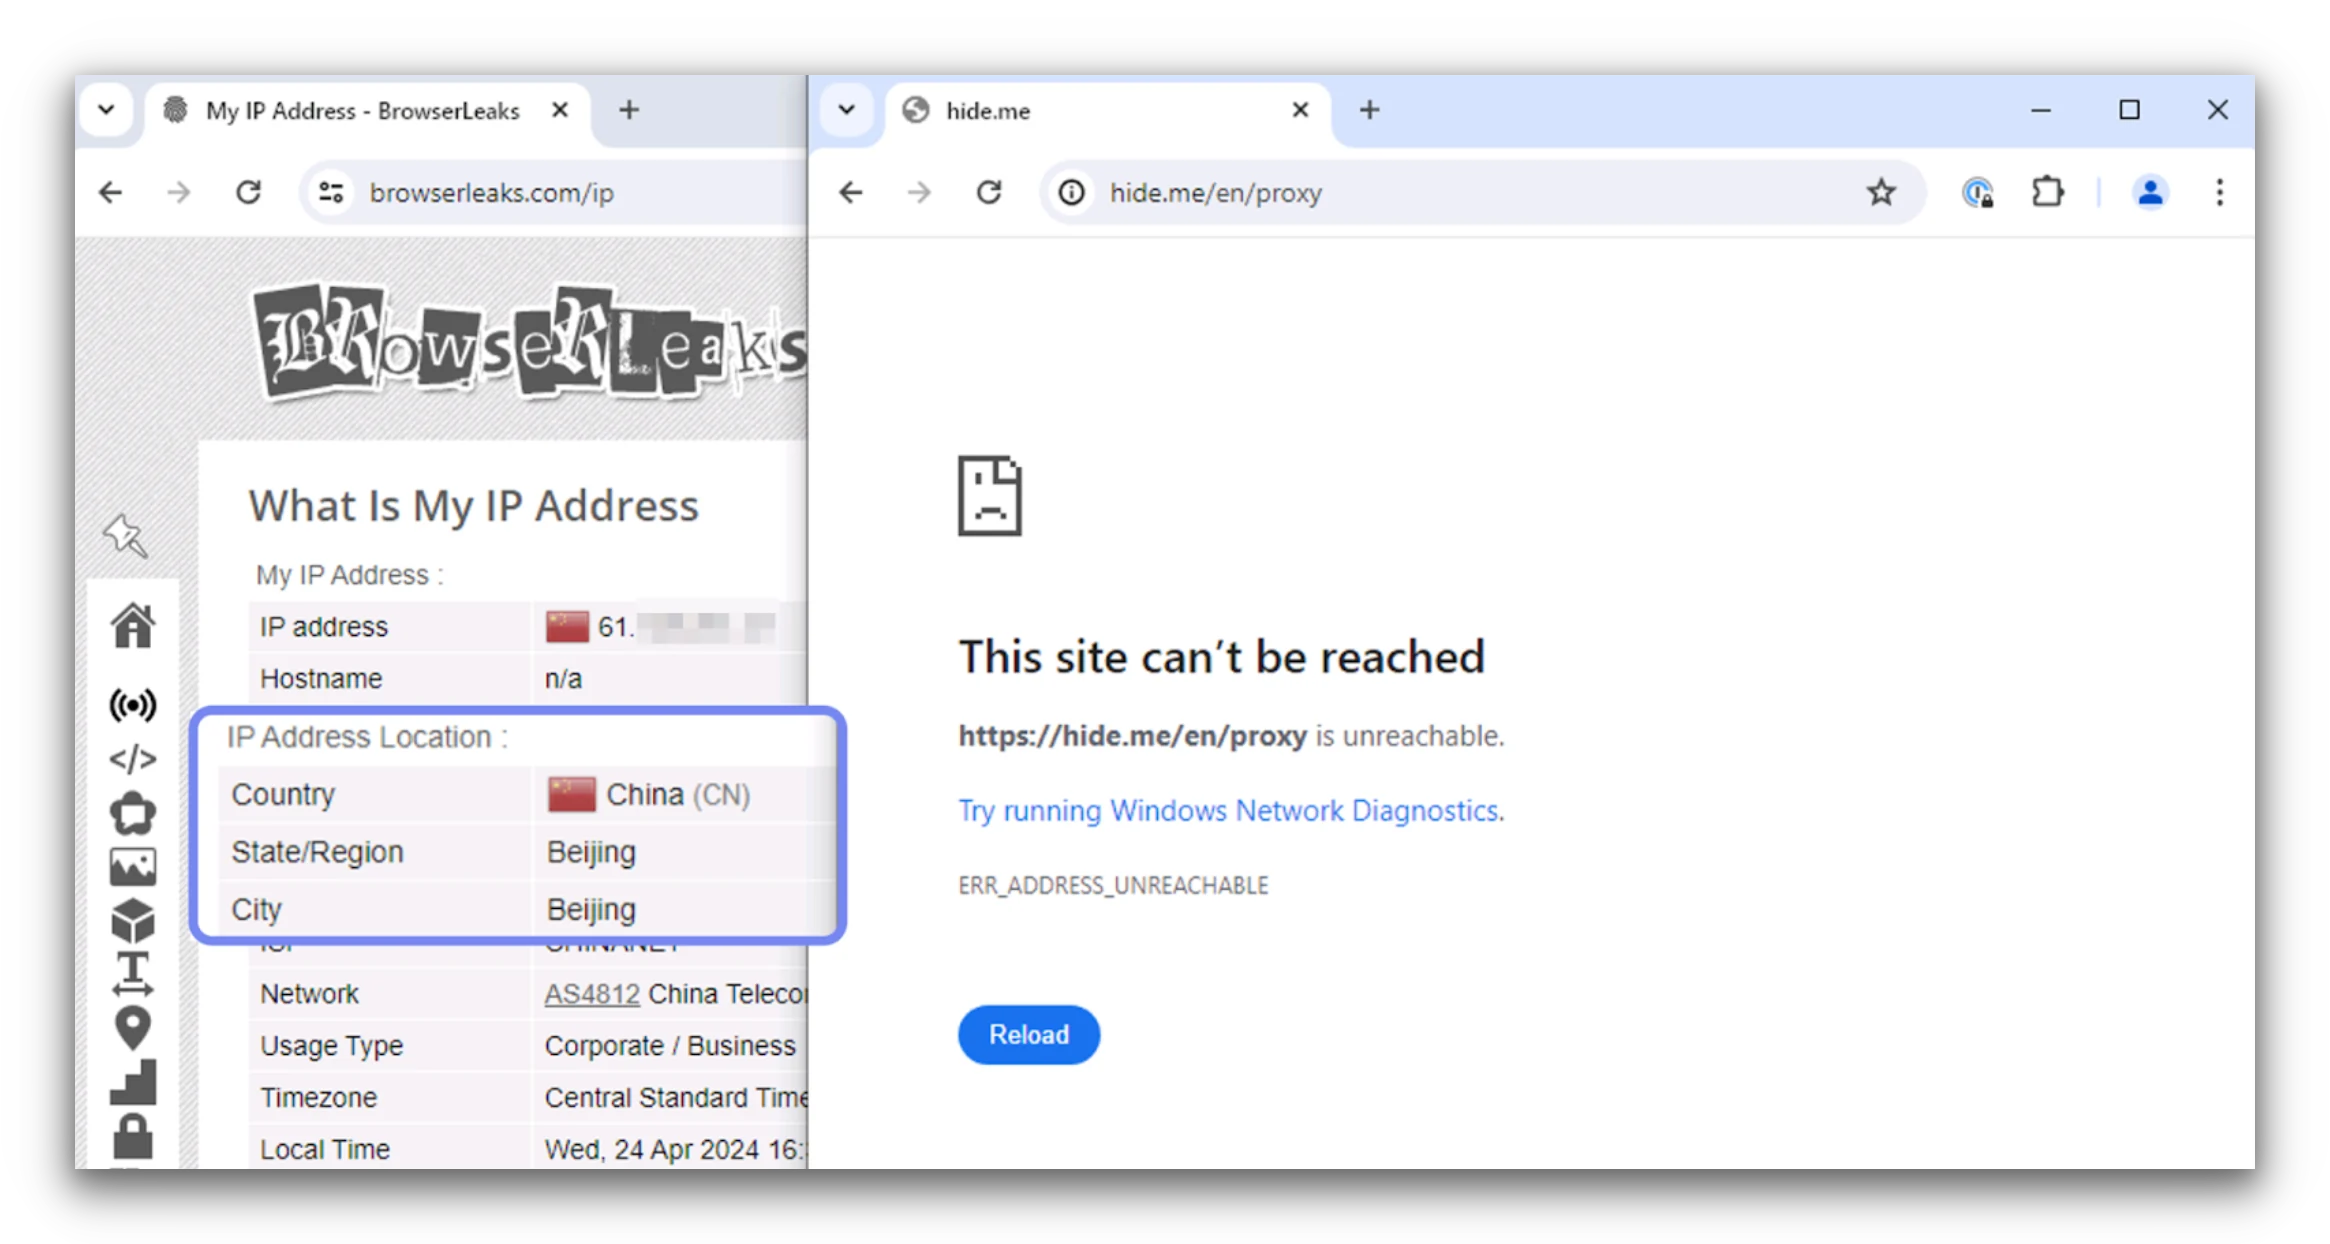 Zrzut ekranu ze strony BrowserLeaks pokazujący chiński adres IP oraz zablokowany serwer proxy Hide.Me